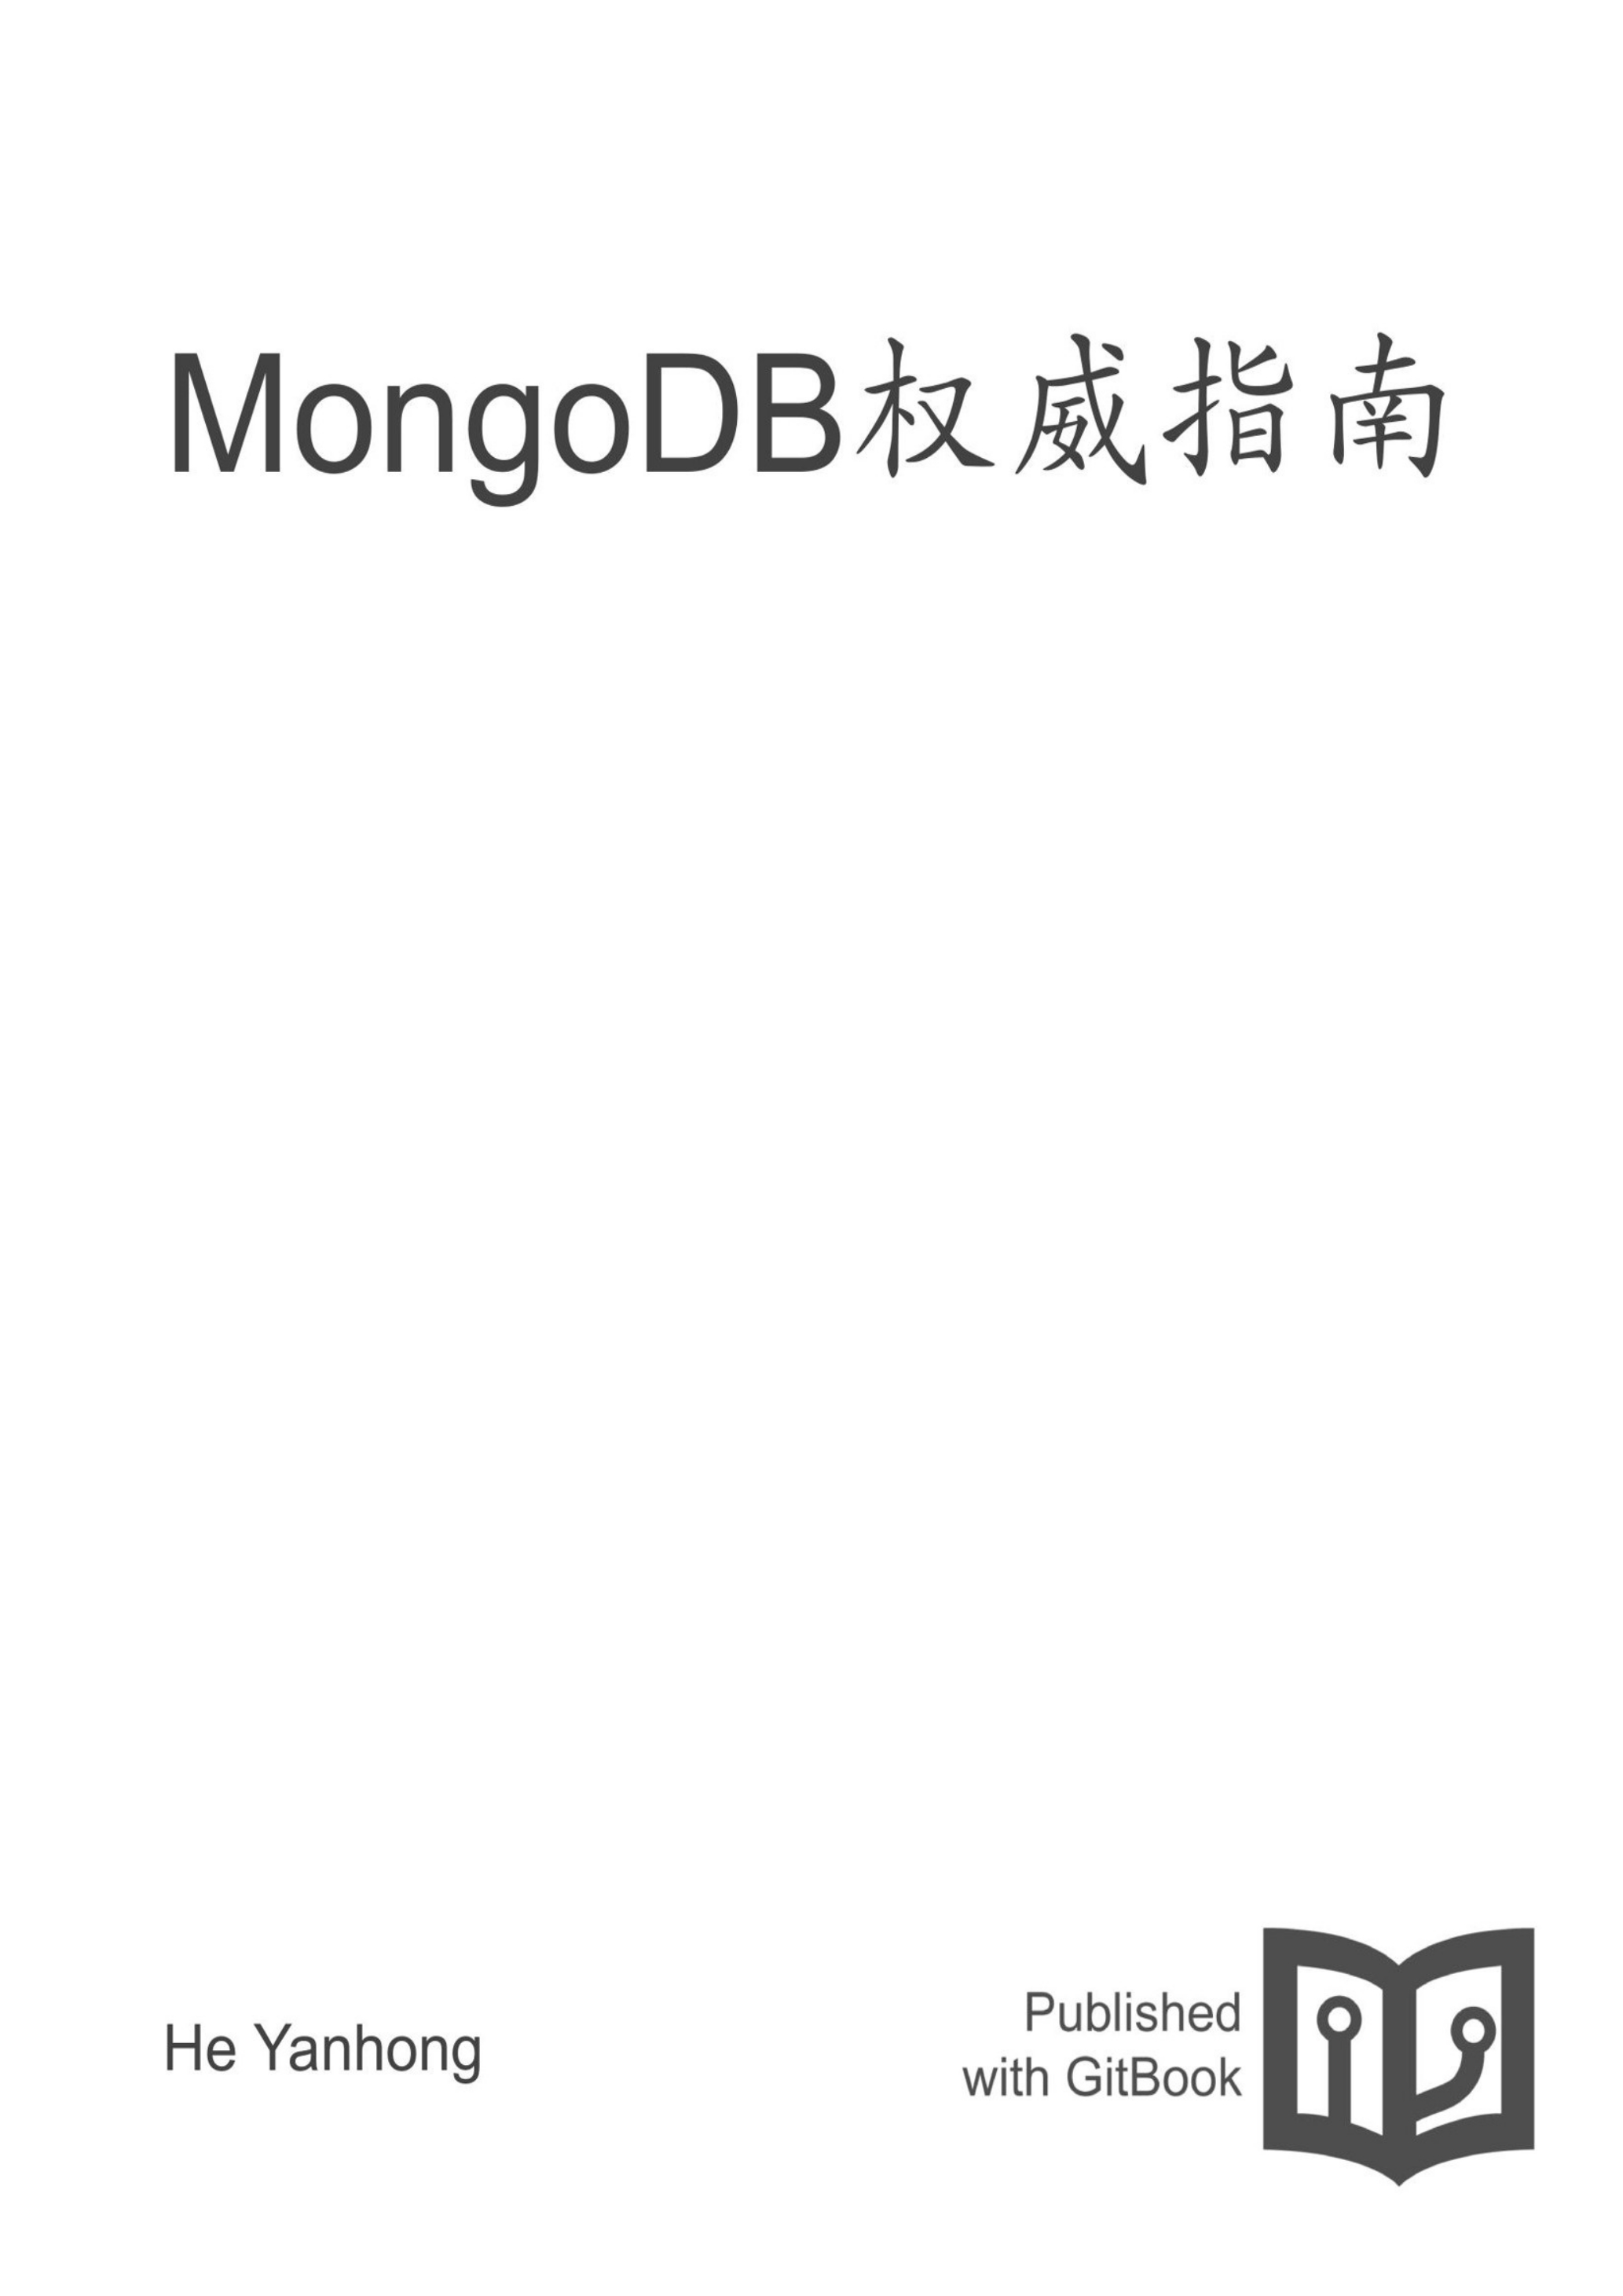 《MongoDB权威指南》读书笔记 封面